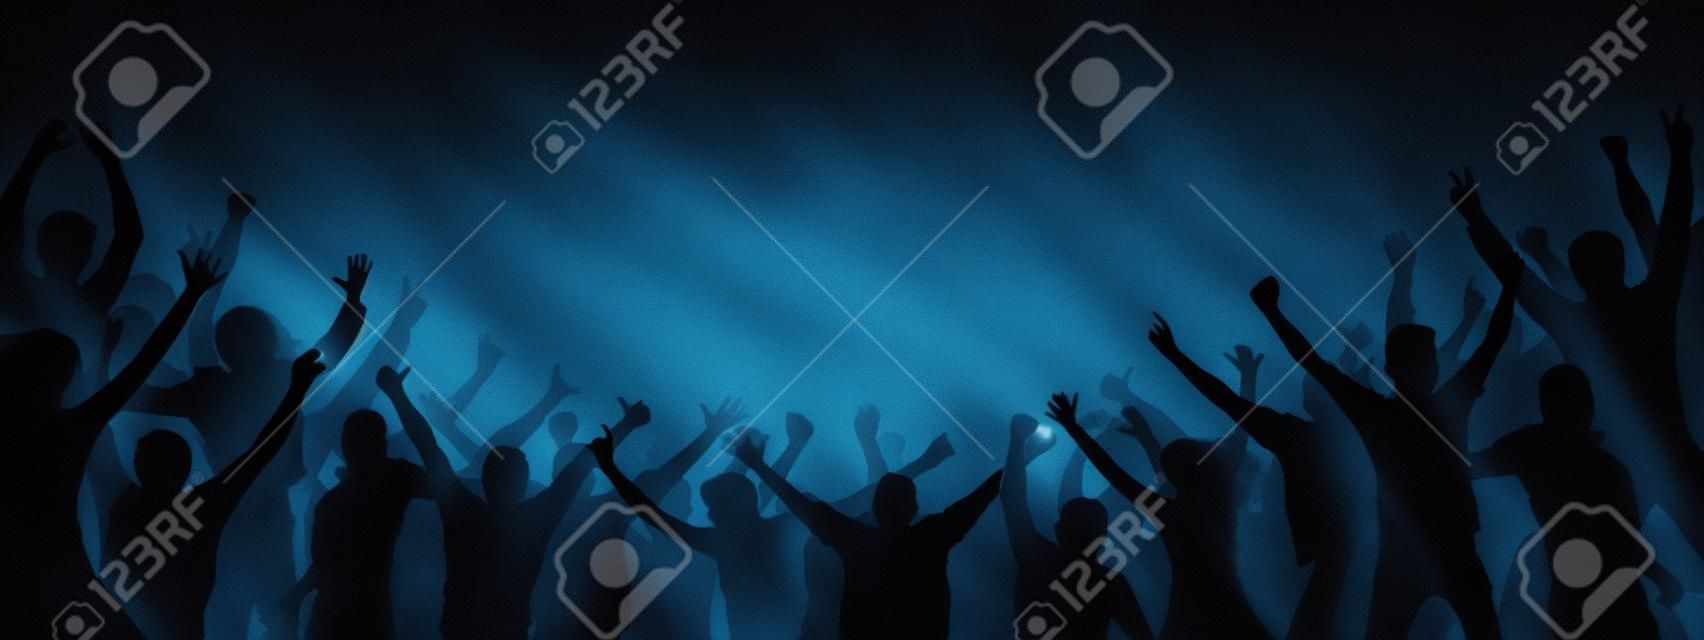 Menschenmenge applaudiert. Getrennte getrennte Leute, Schattenbild. Publikum anfeuern. Party, Applaus. Fans tanzen Konzert, Disco